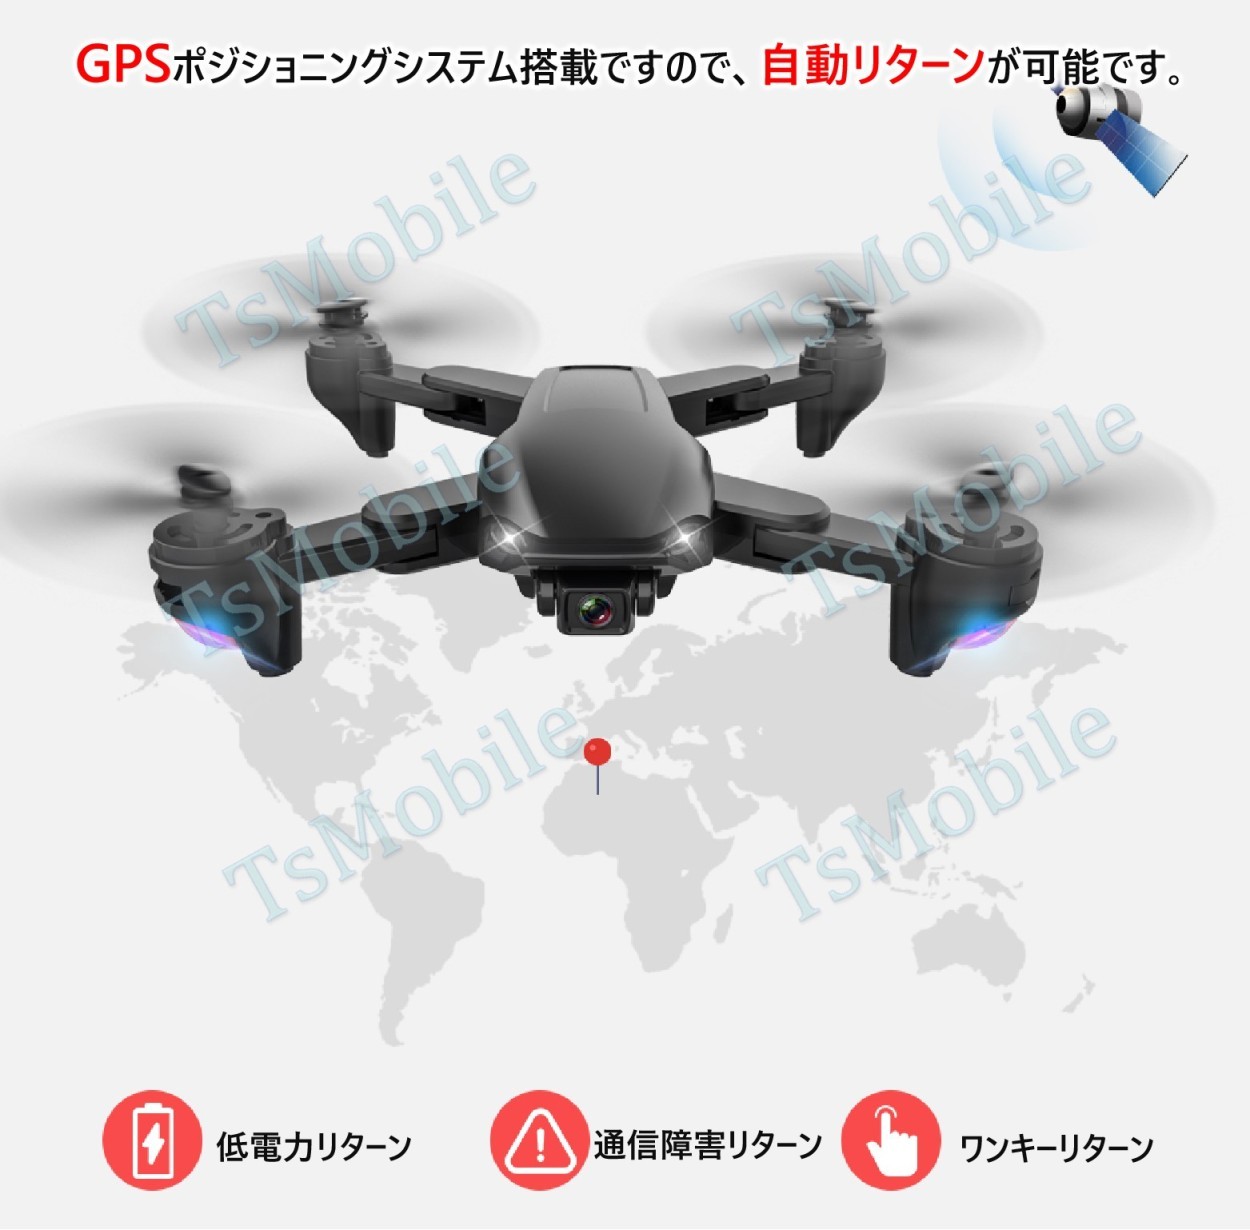 ドローン カメラ付き SG701s RCドローン 折りたたみ式 GPS FPVクワッドコプター搭載 4K 空撮カメラ付 自動帰還 安い  2021年最新版 5G